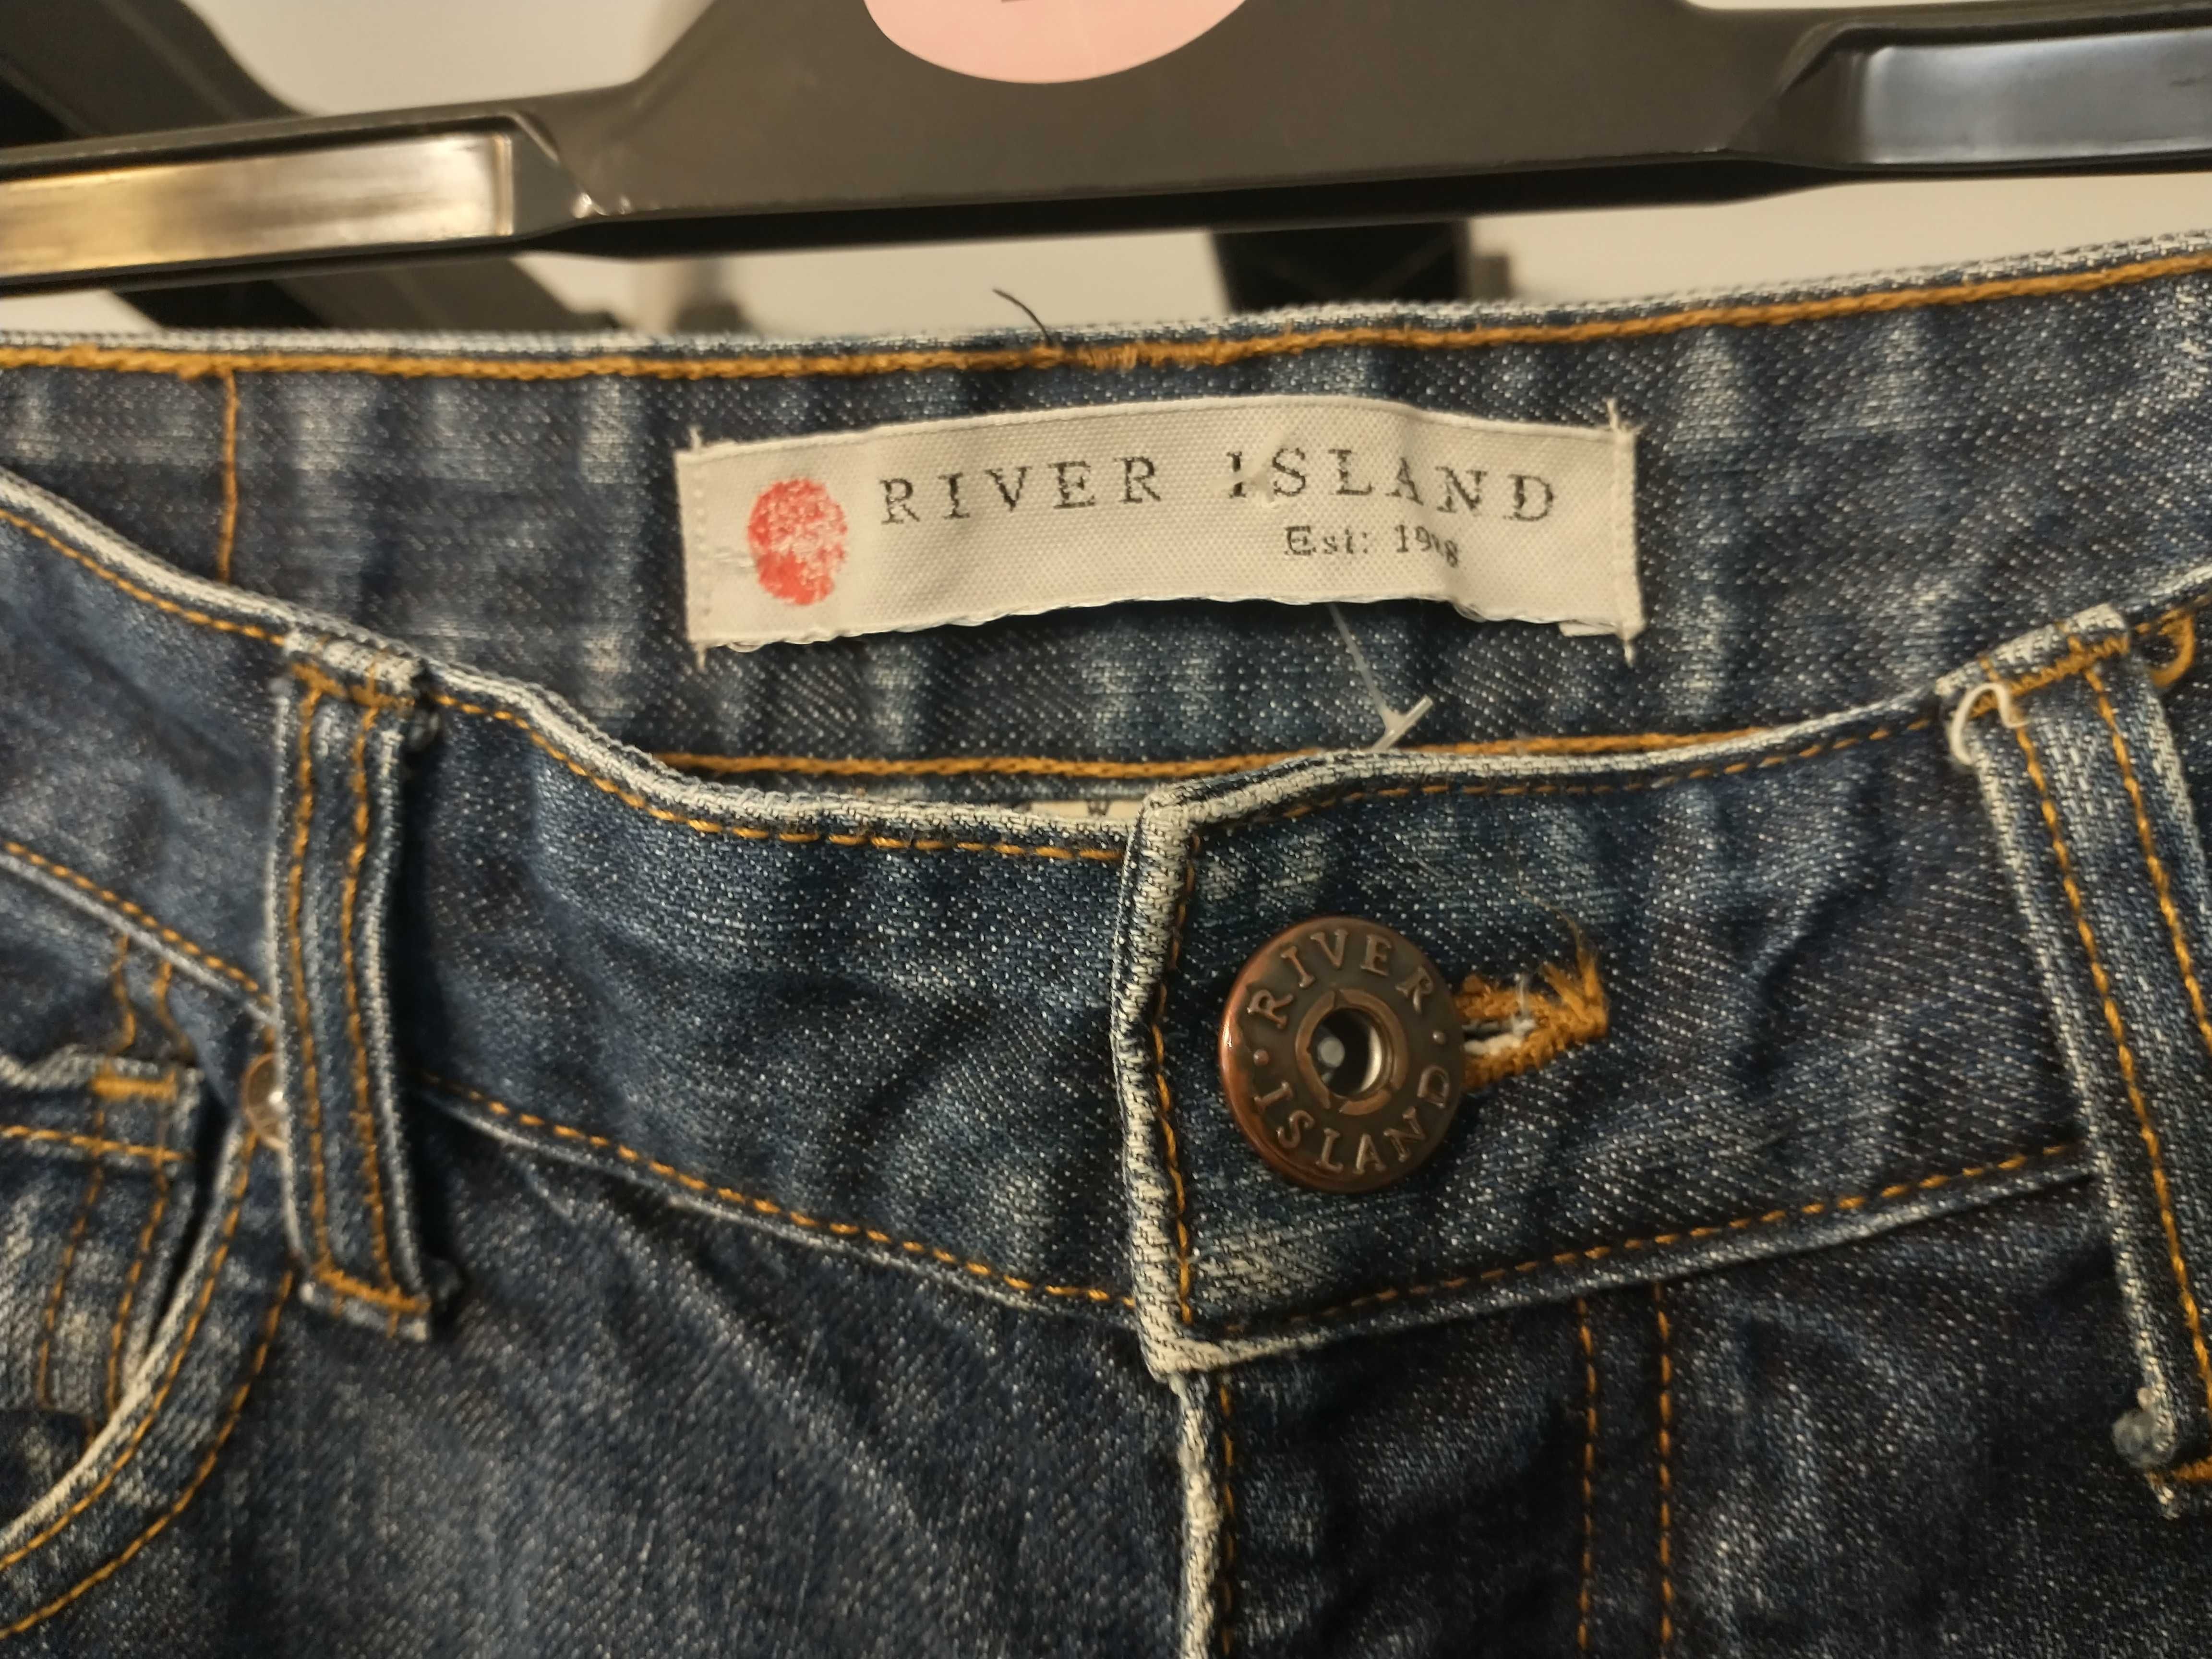 Spodnie jeansowe męskie, chłopięce River Island W30 L30, oryginalne